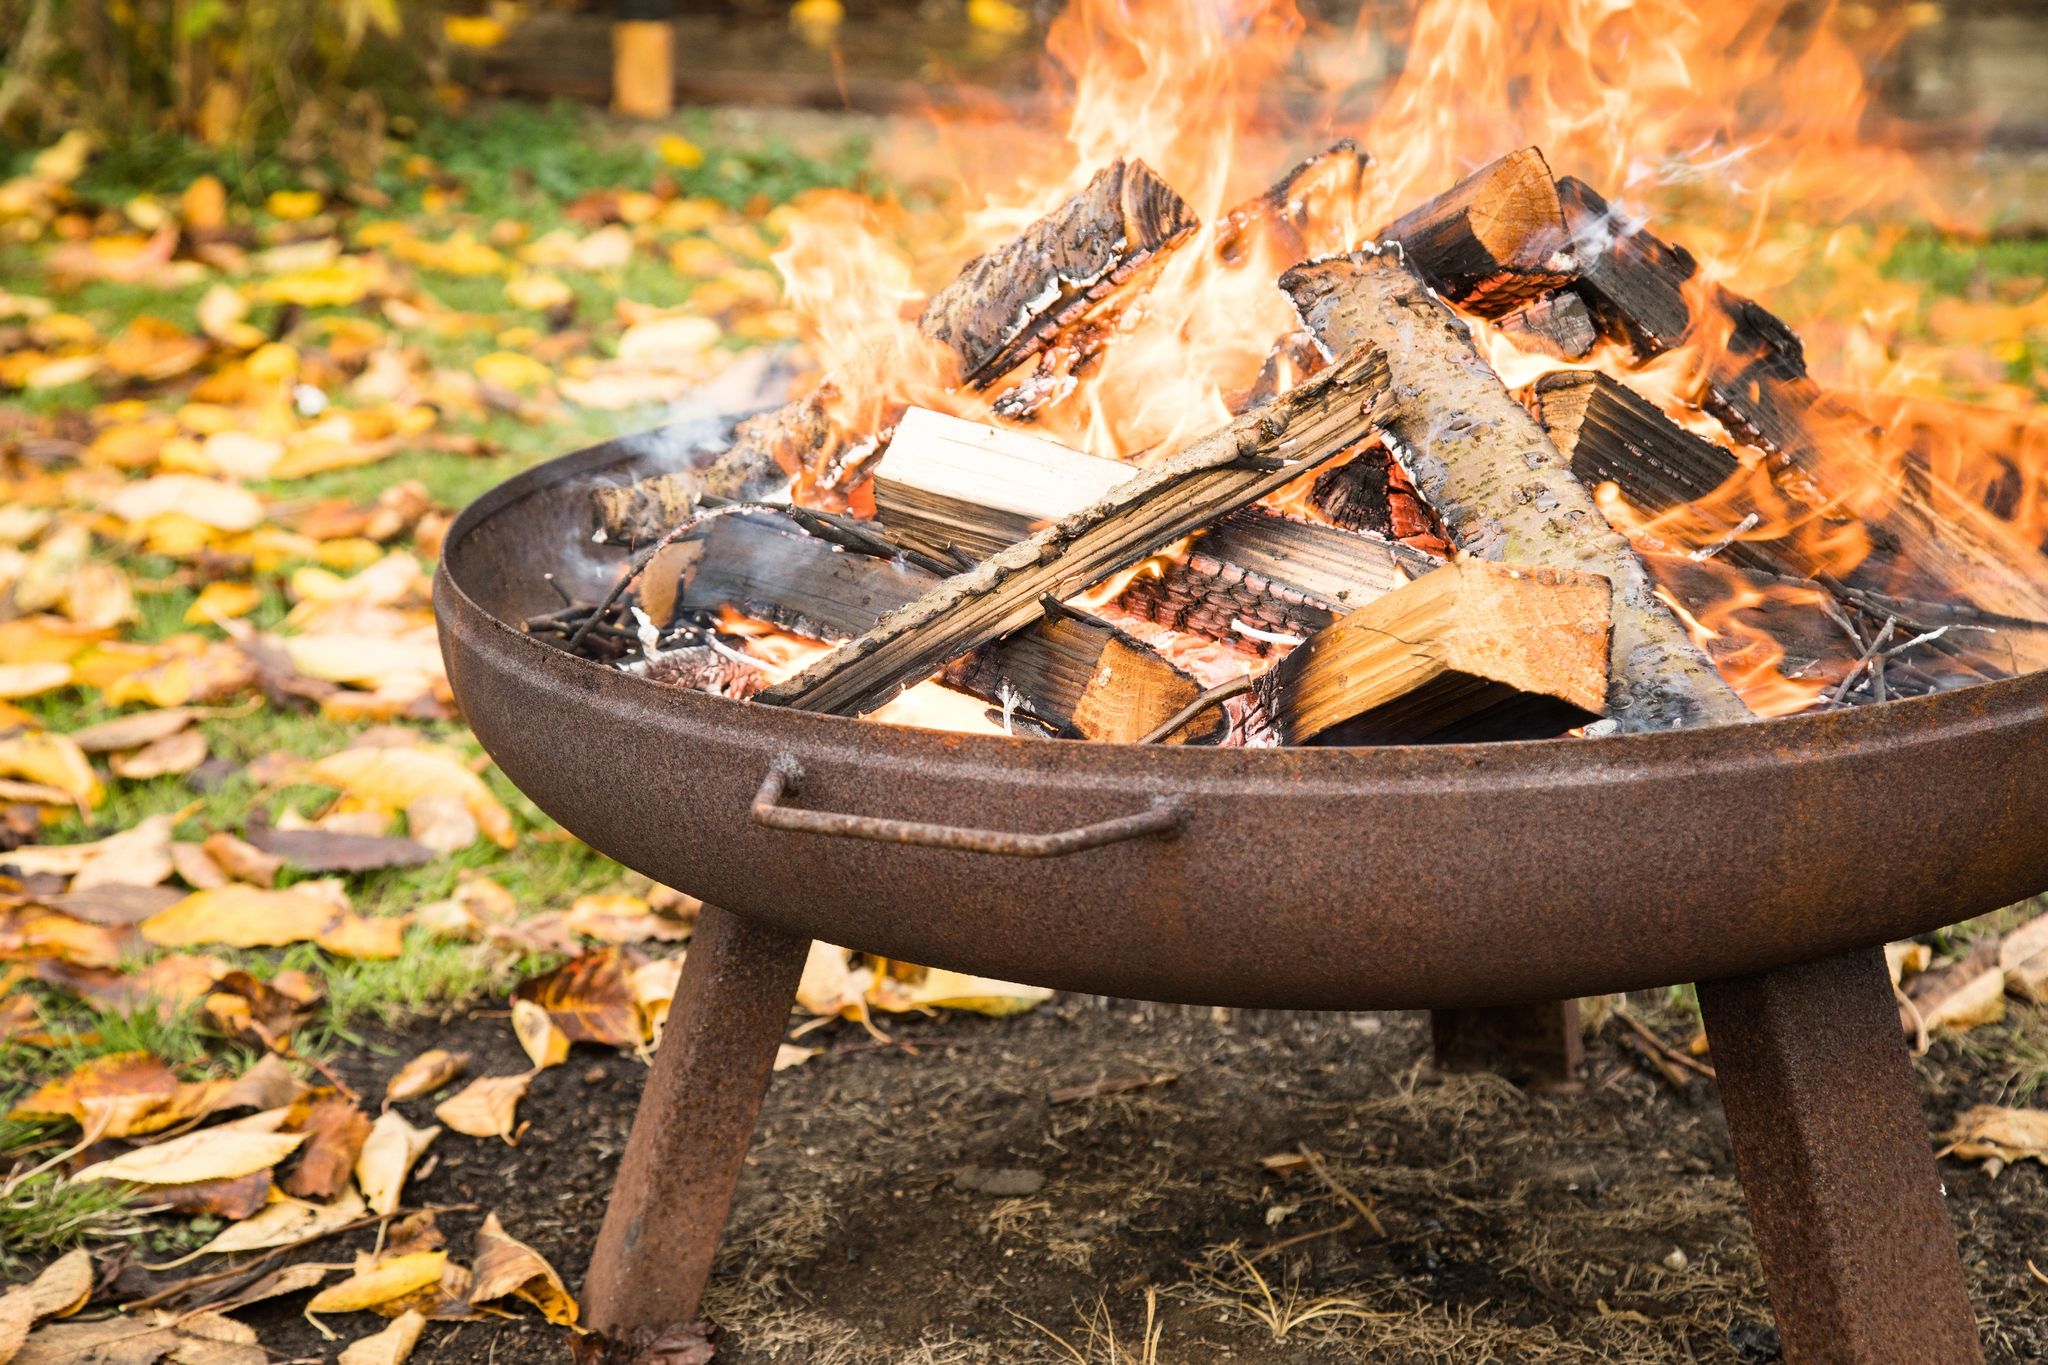 Am besten in einer Feuerschale - Während man kuschelig warm am Lagerfeuer sitzt, sollte die Sicherheit an erster Stelle stehen.